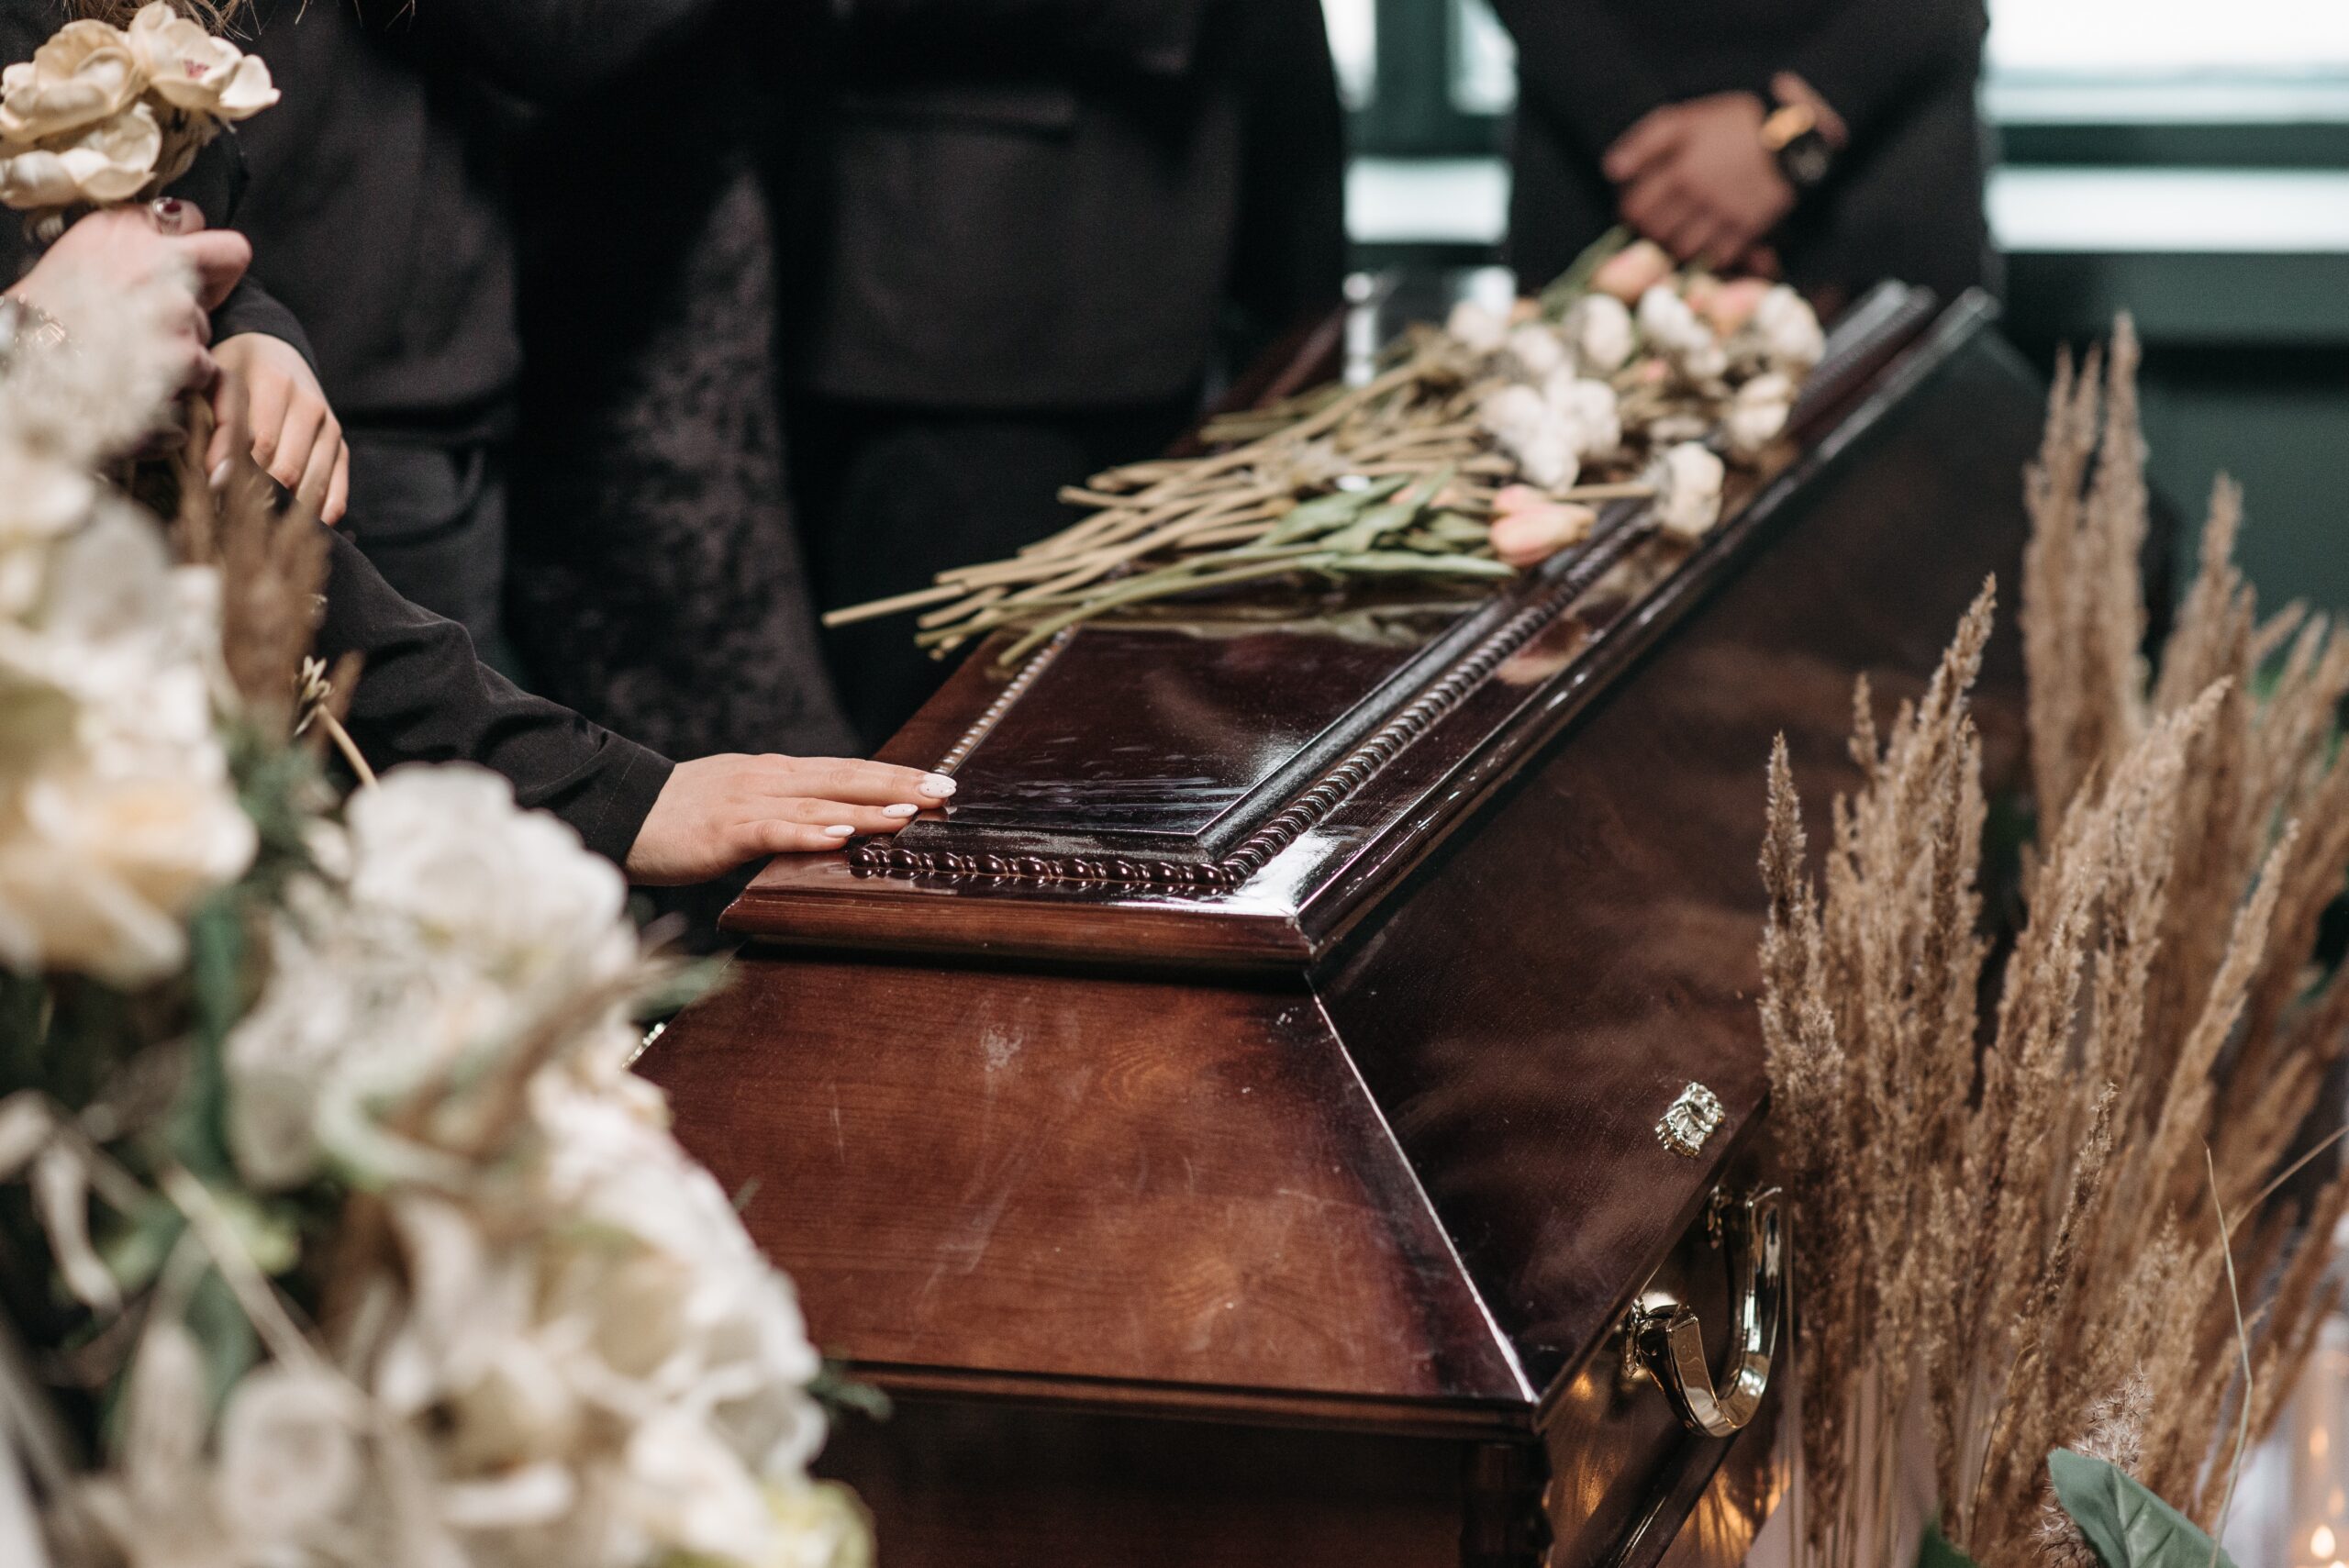 Brauner, glänzender Sarg in der Trauerhalle bei einer Beerdigung. Auf dem Sarg liegen Blumen und daneben stehen schwarz gekleidete Trauergäste